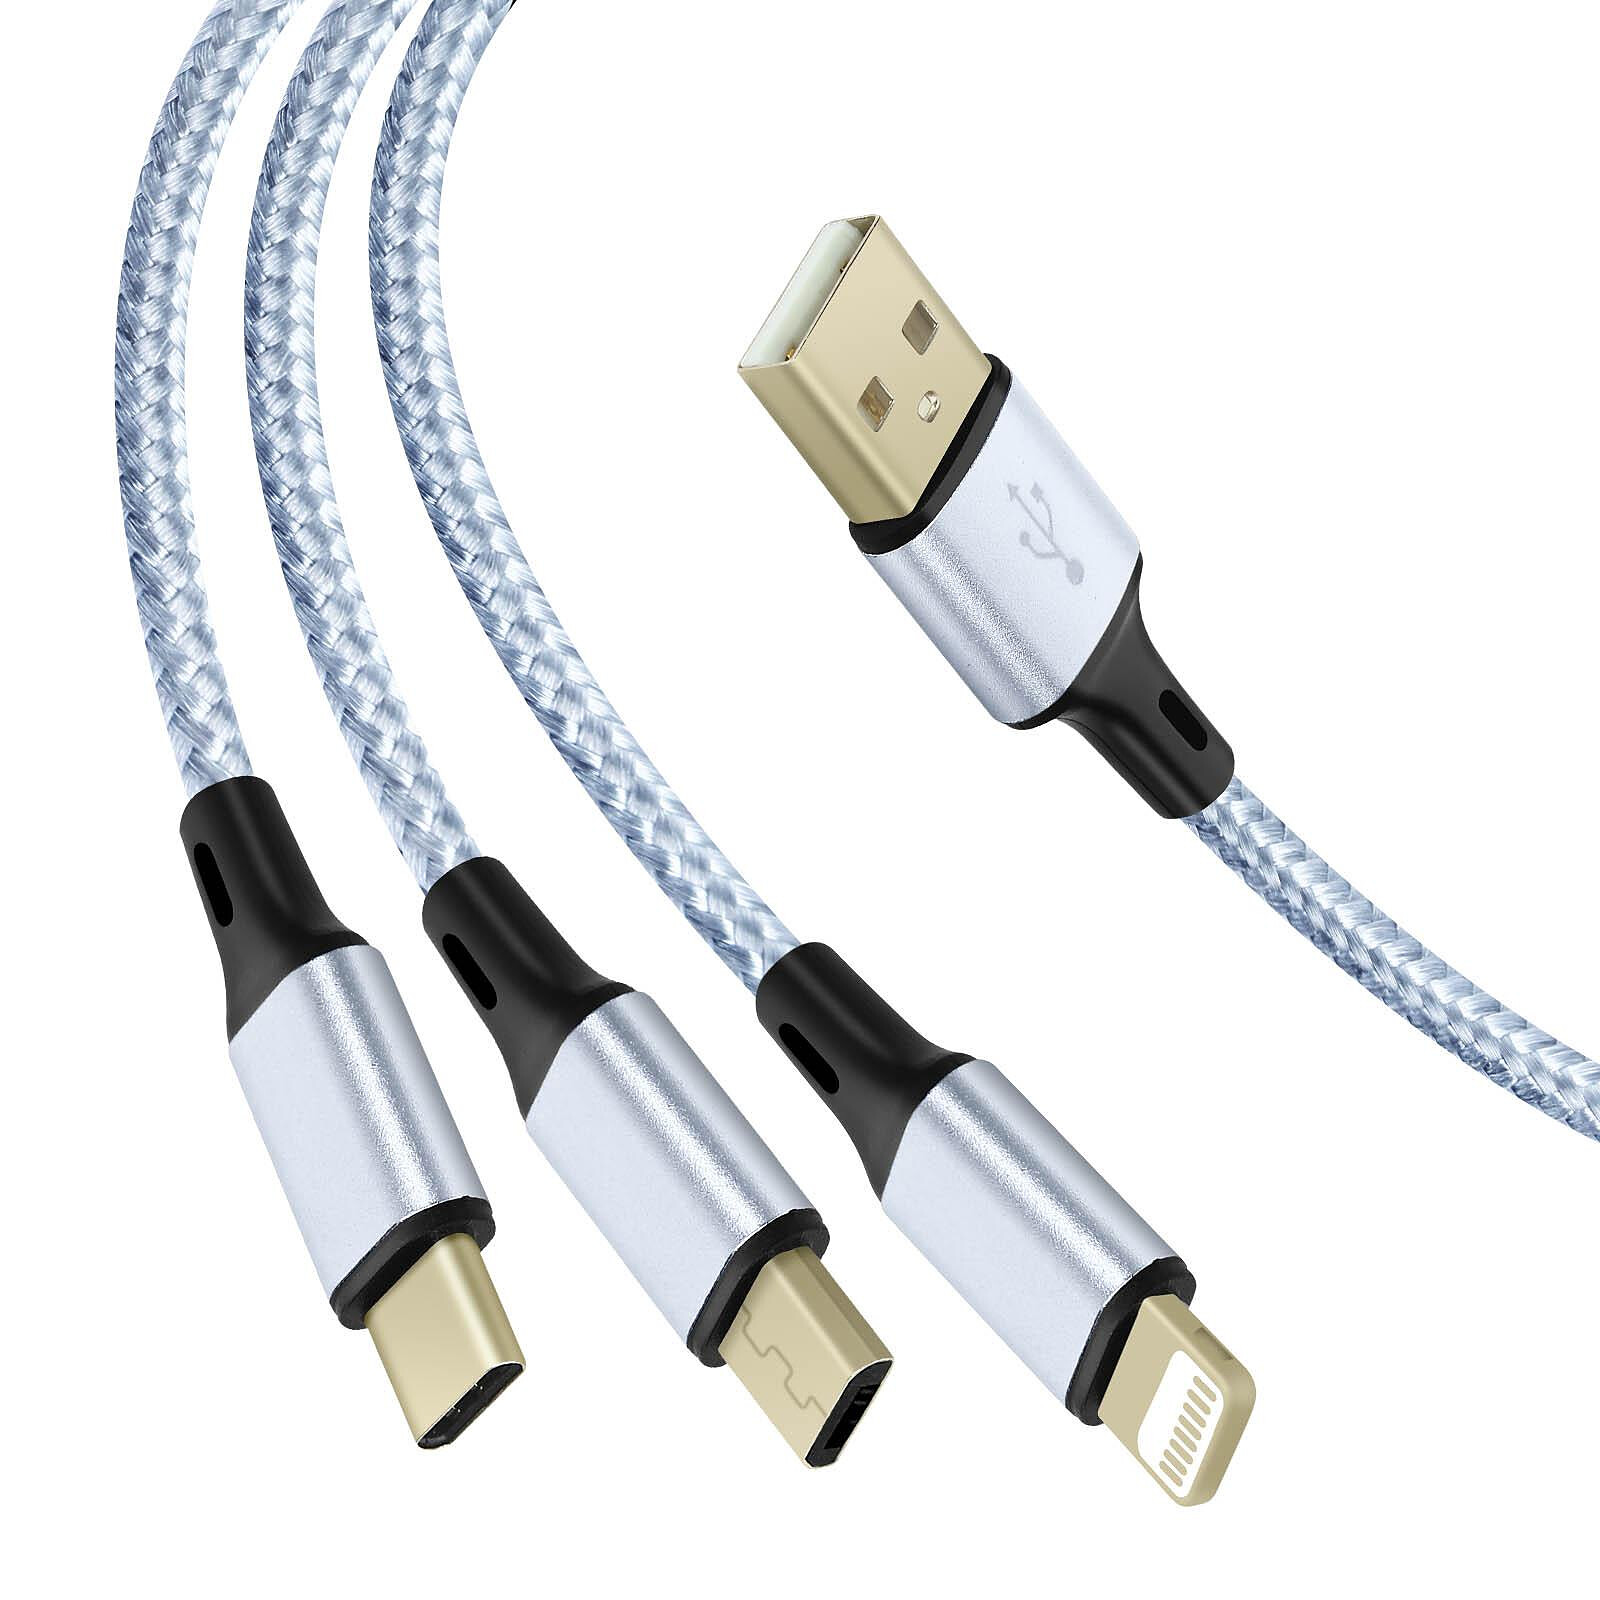 Universal - Noir 3 en 1 Câble USB Charge rapide Câble USB type C